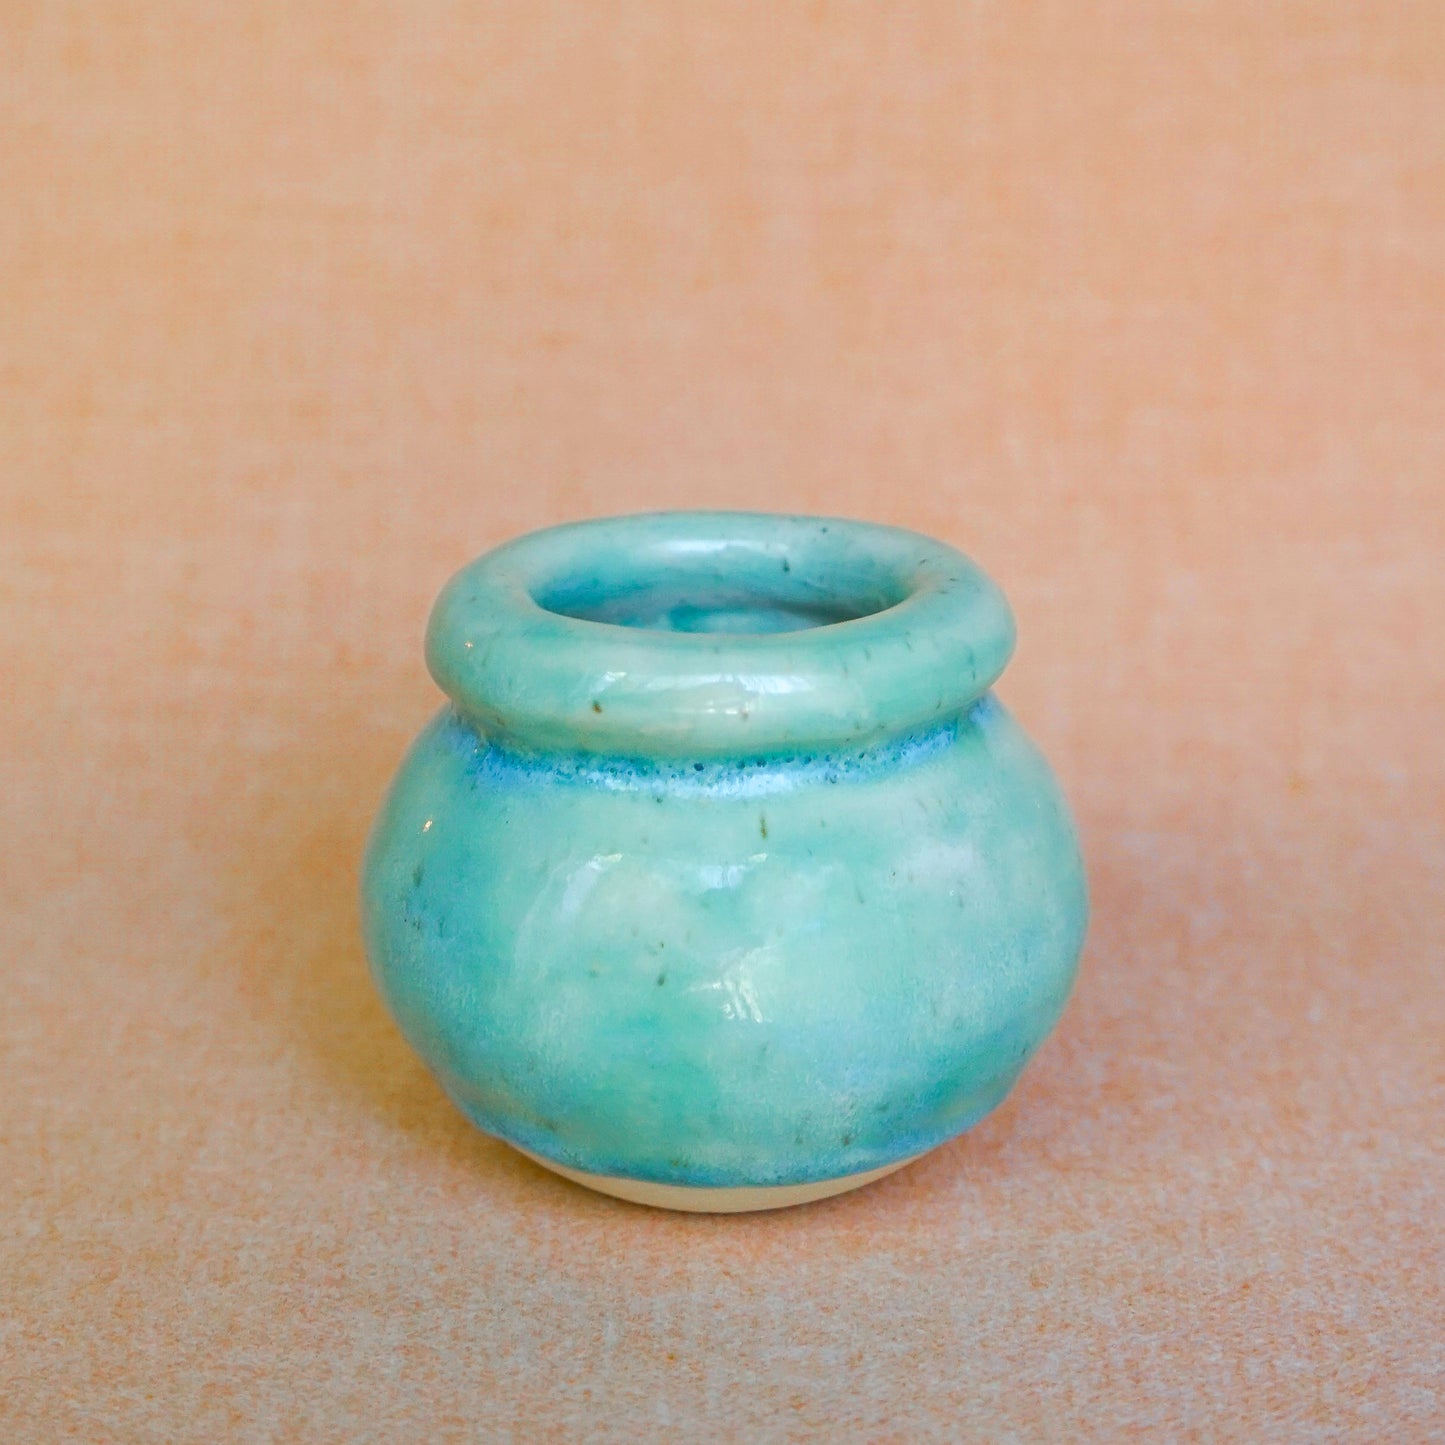 The Aqua + Walnut Coil Vase